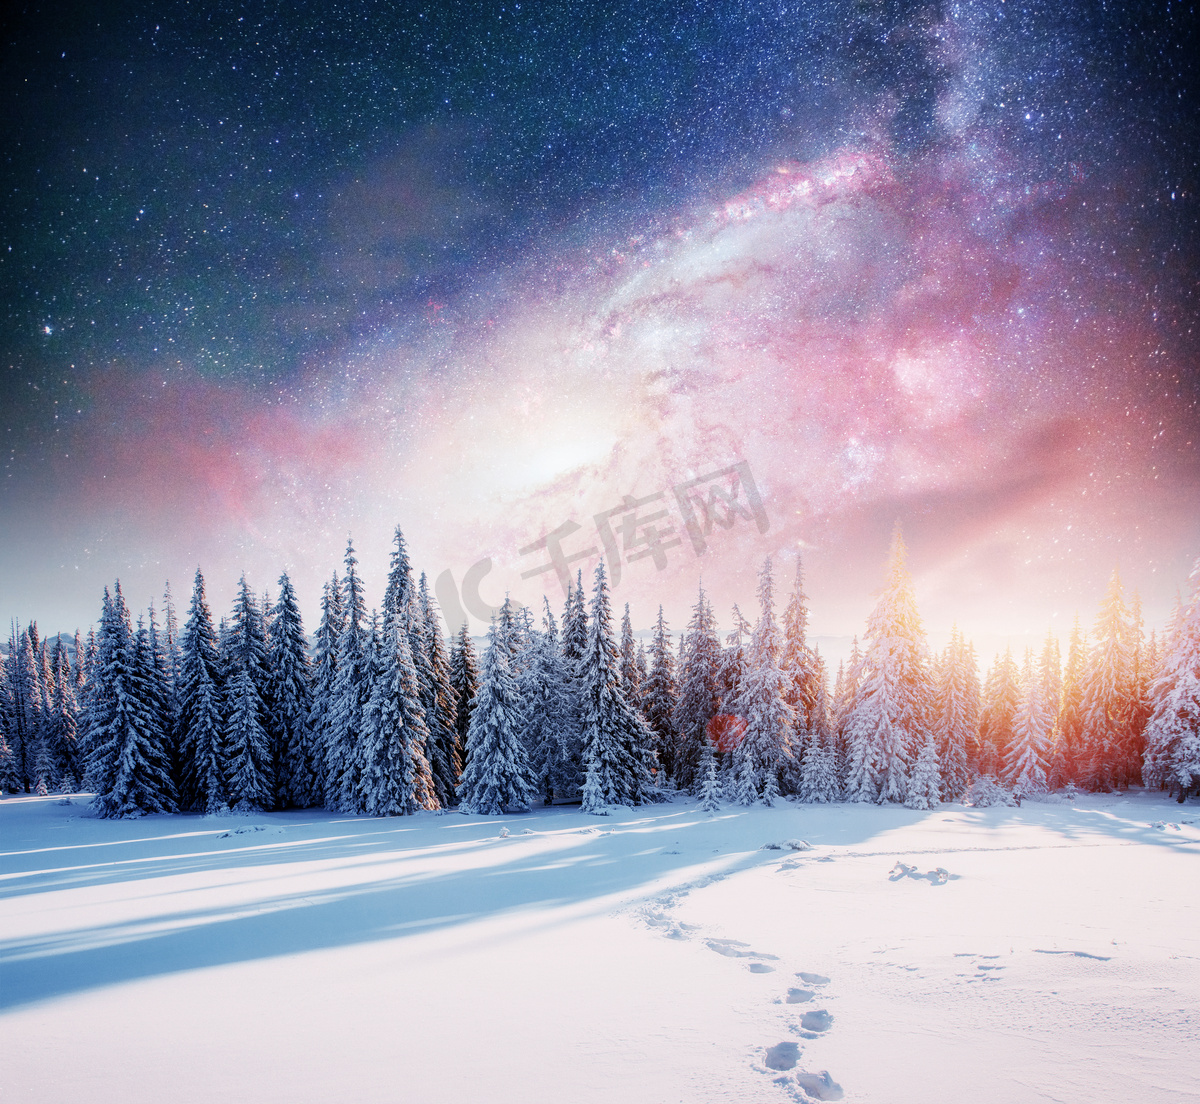 在冬雪的夜空中繁星闪烁。梦幻般的银河在除夕夜。银河是一个梦幻般的新年前夜。冬天的路在山上。美国宇航局的礼遇. 图片